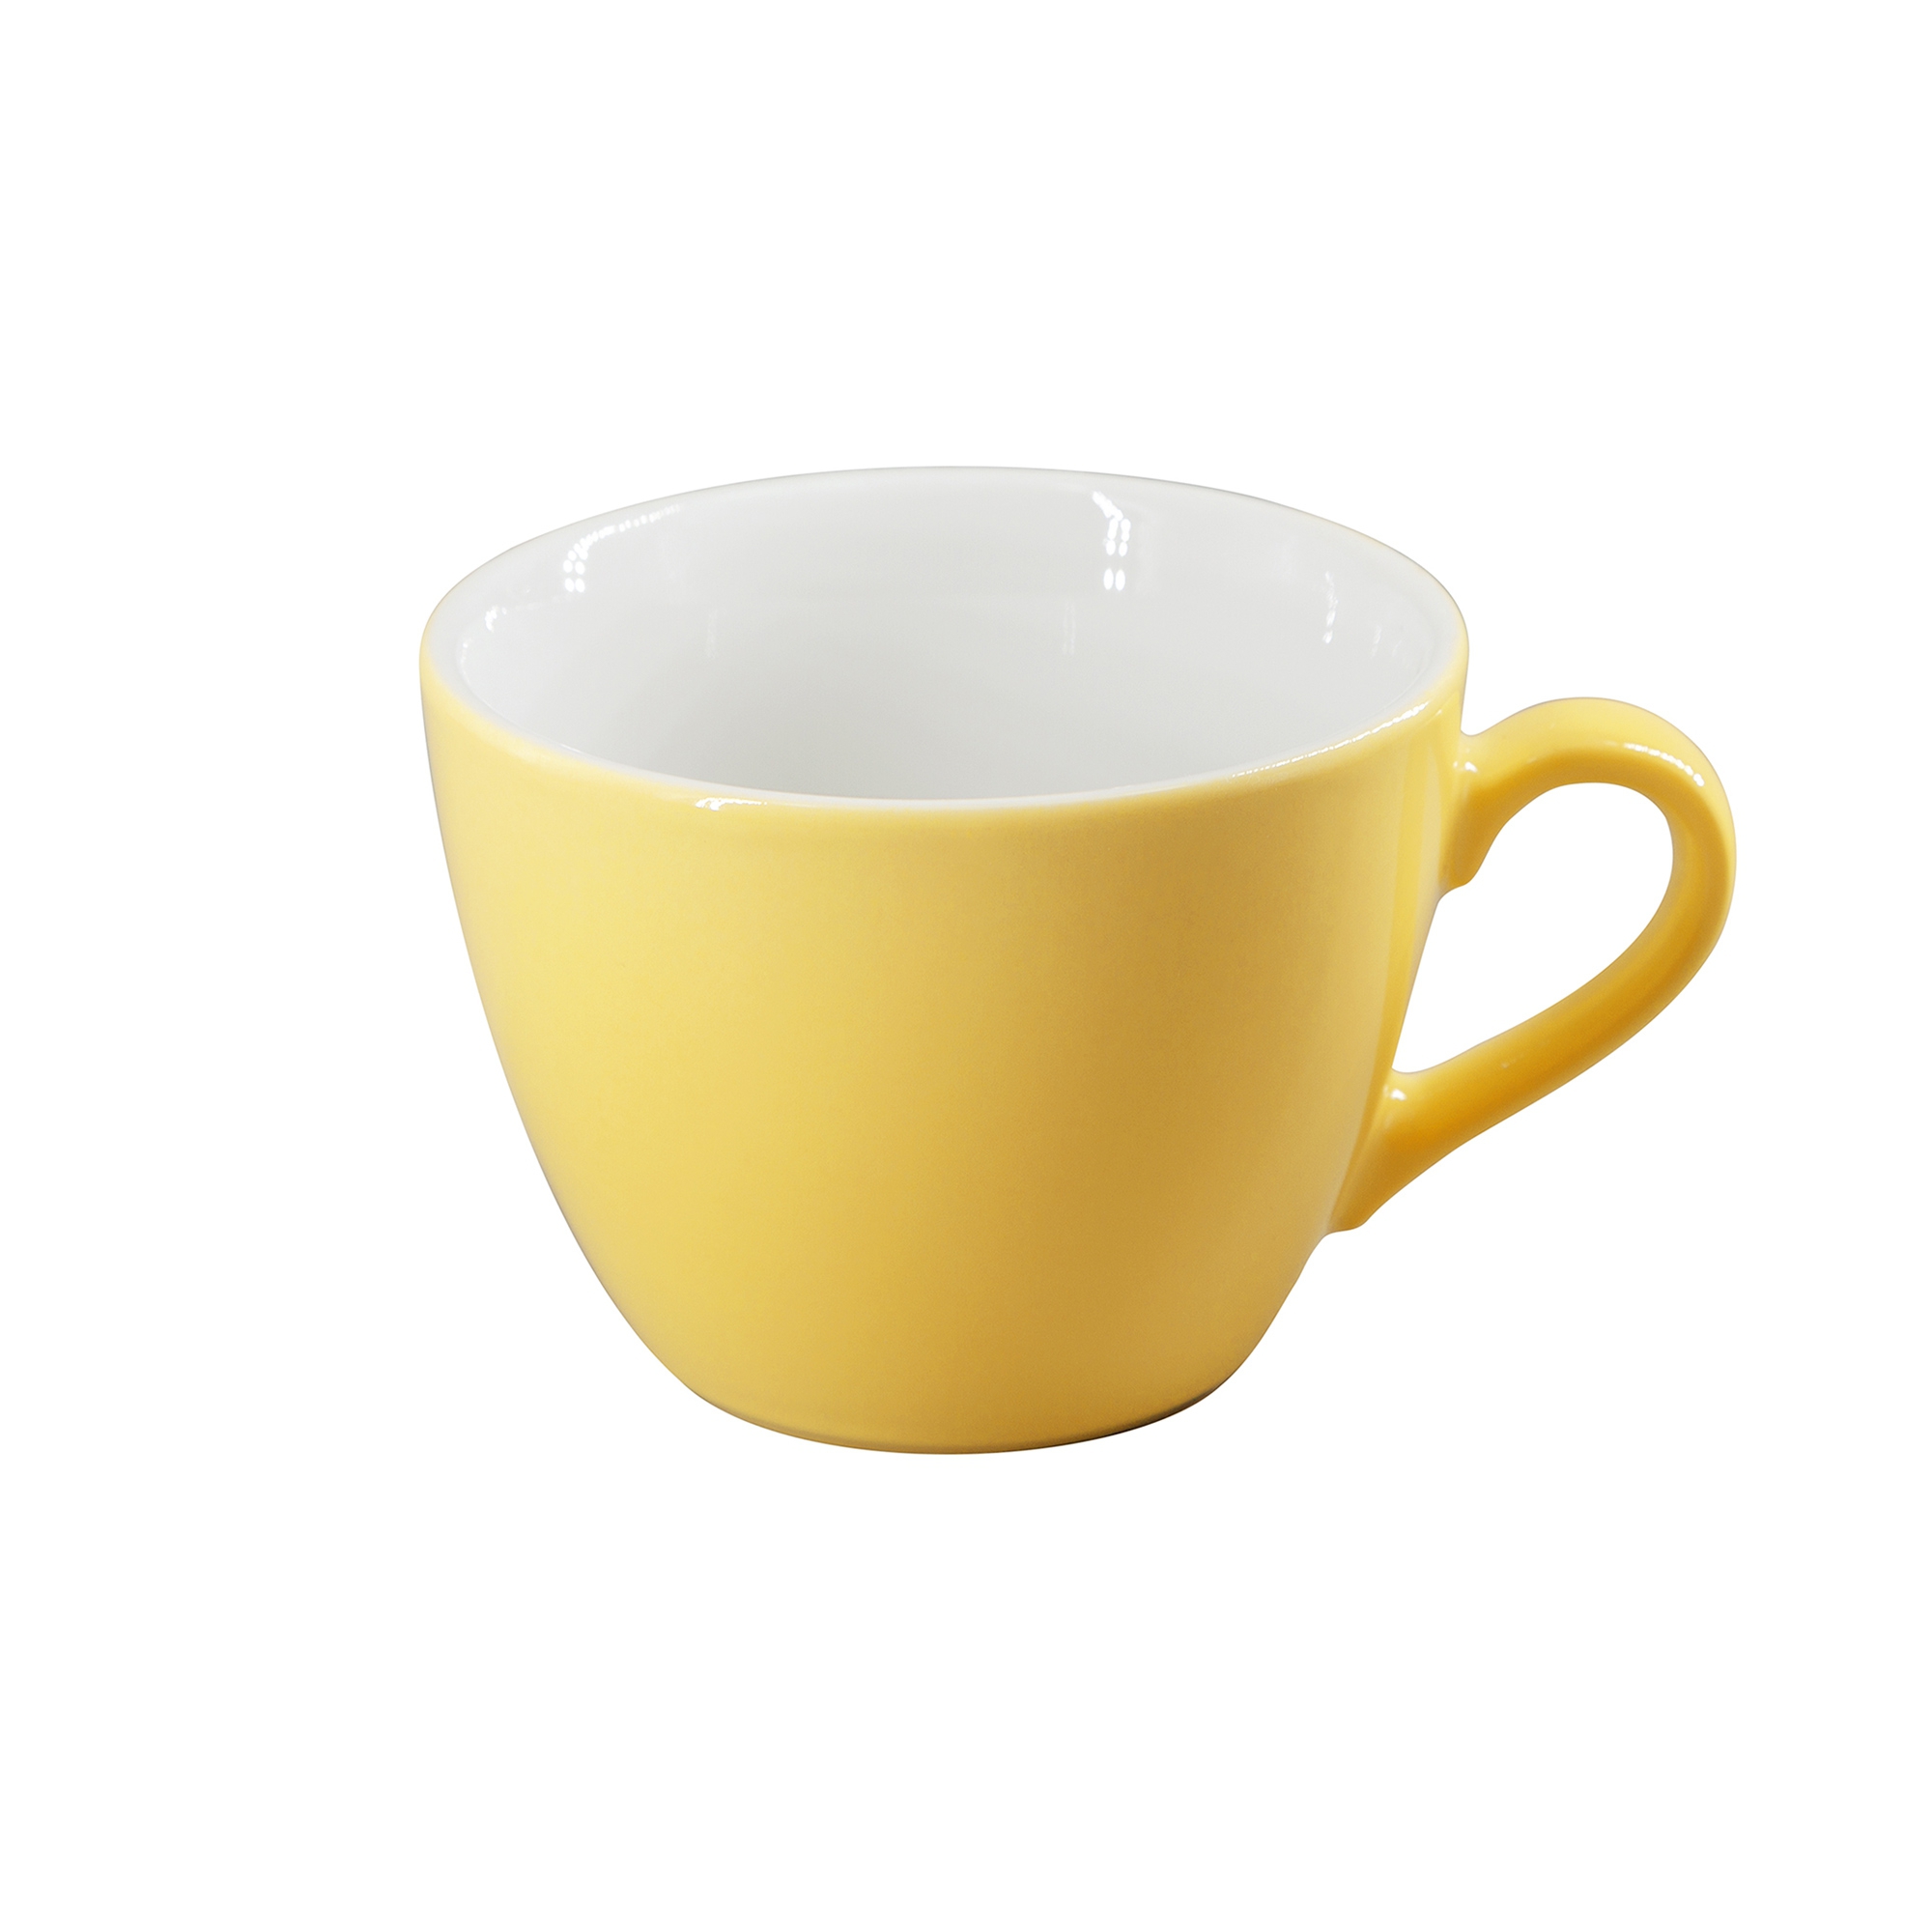 Eschenbach - cup 0.21 l - light yellow